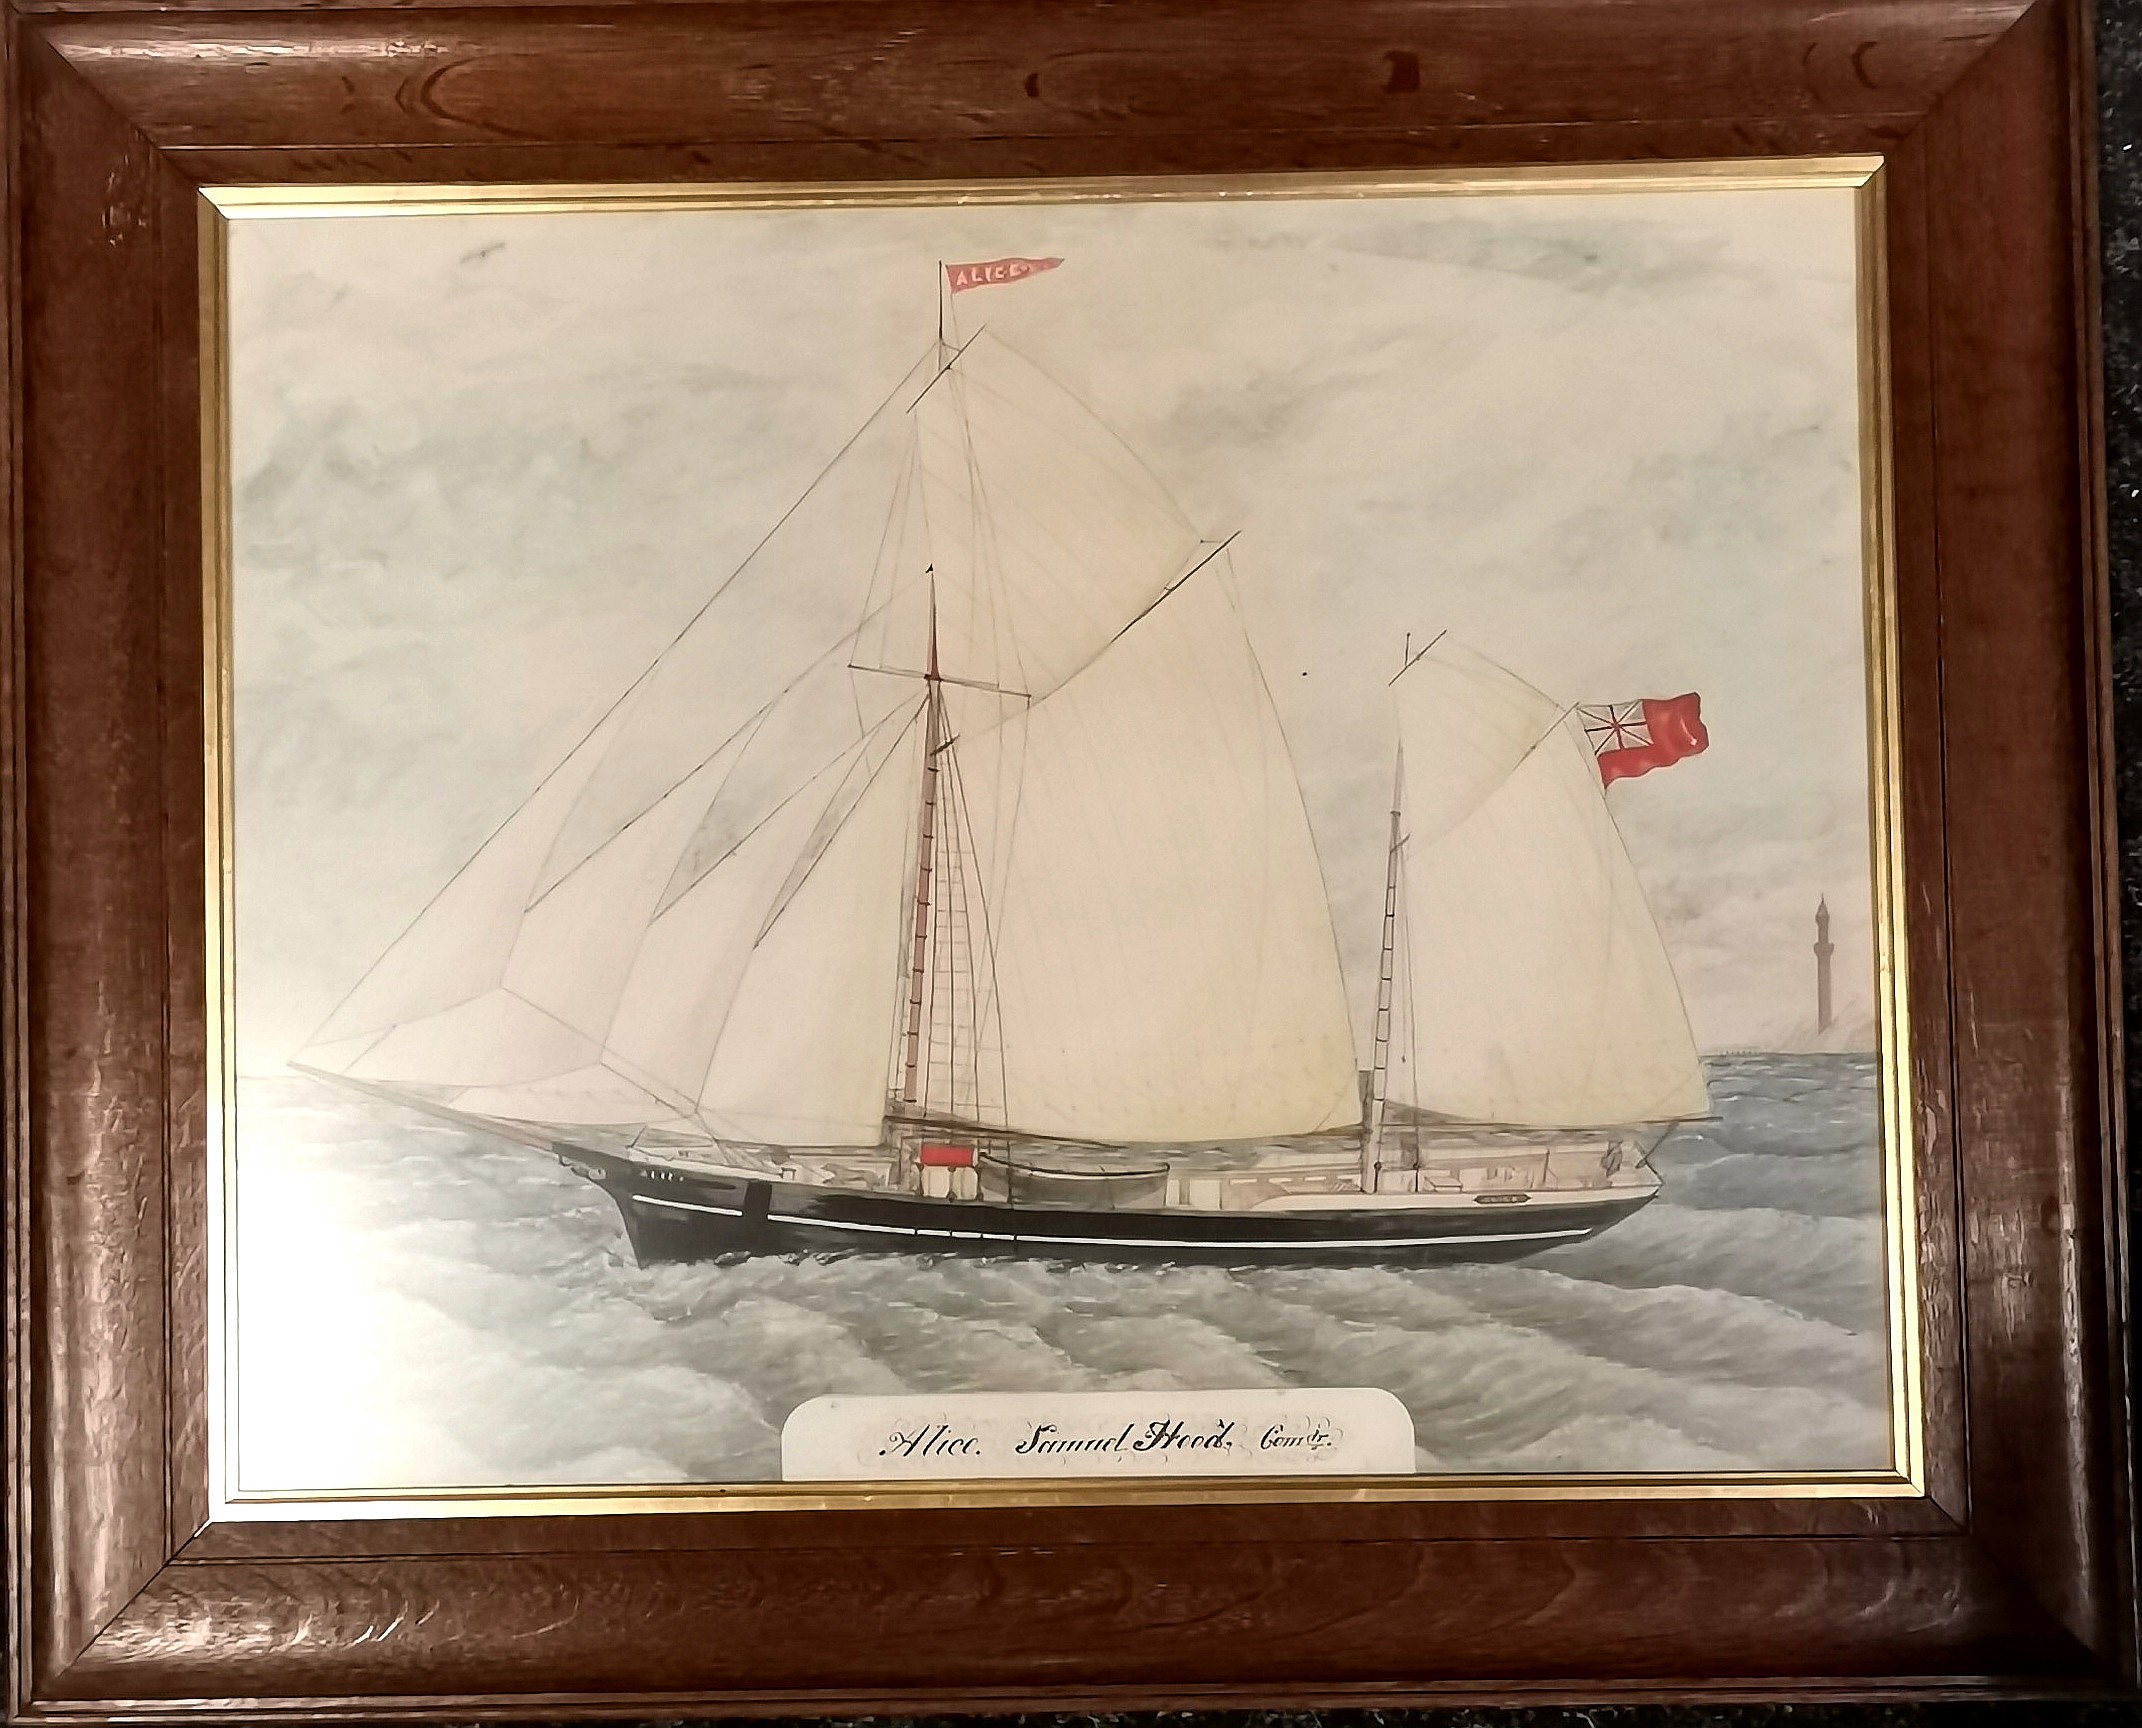 Antique watercolour study titled Alice, Samuel Hood, Commander - oak frame 74cm x 61cm